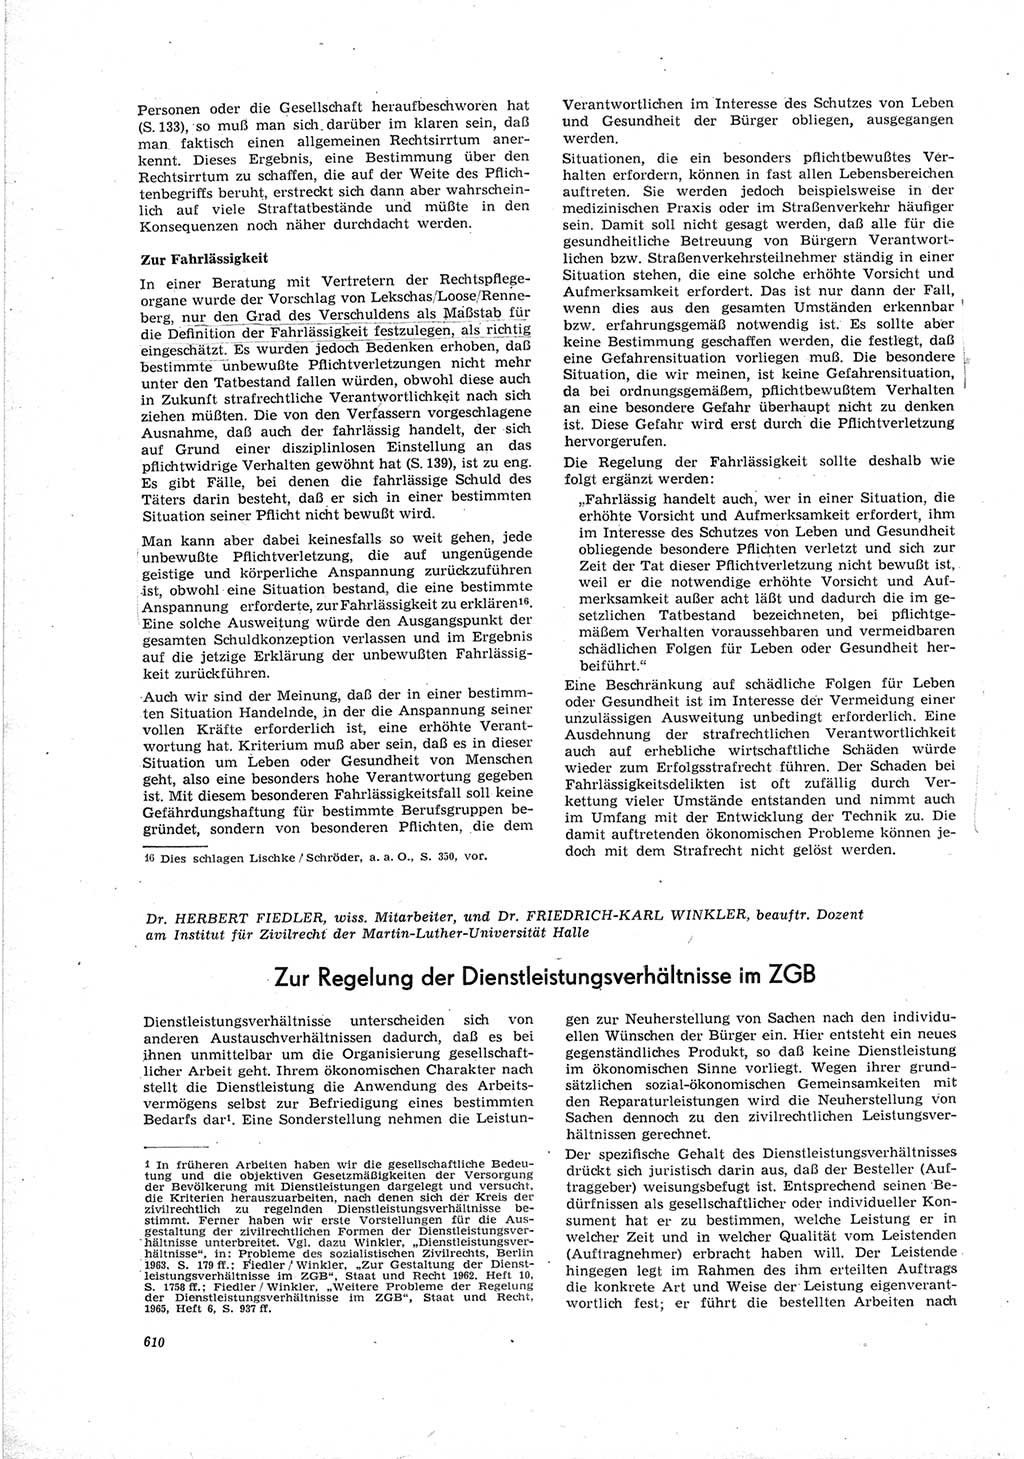 Neue Justiz (NJ), Zeitschrift für Recht und Rechtswissenschaft [Deutsche Demokratische Republik (DDR)], 19. Jahrgang 1965, Seite 610 (NJ DDR 1965, S. 610)